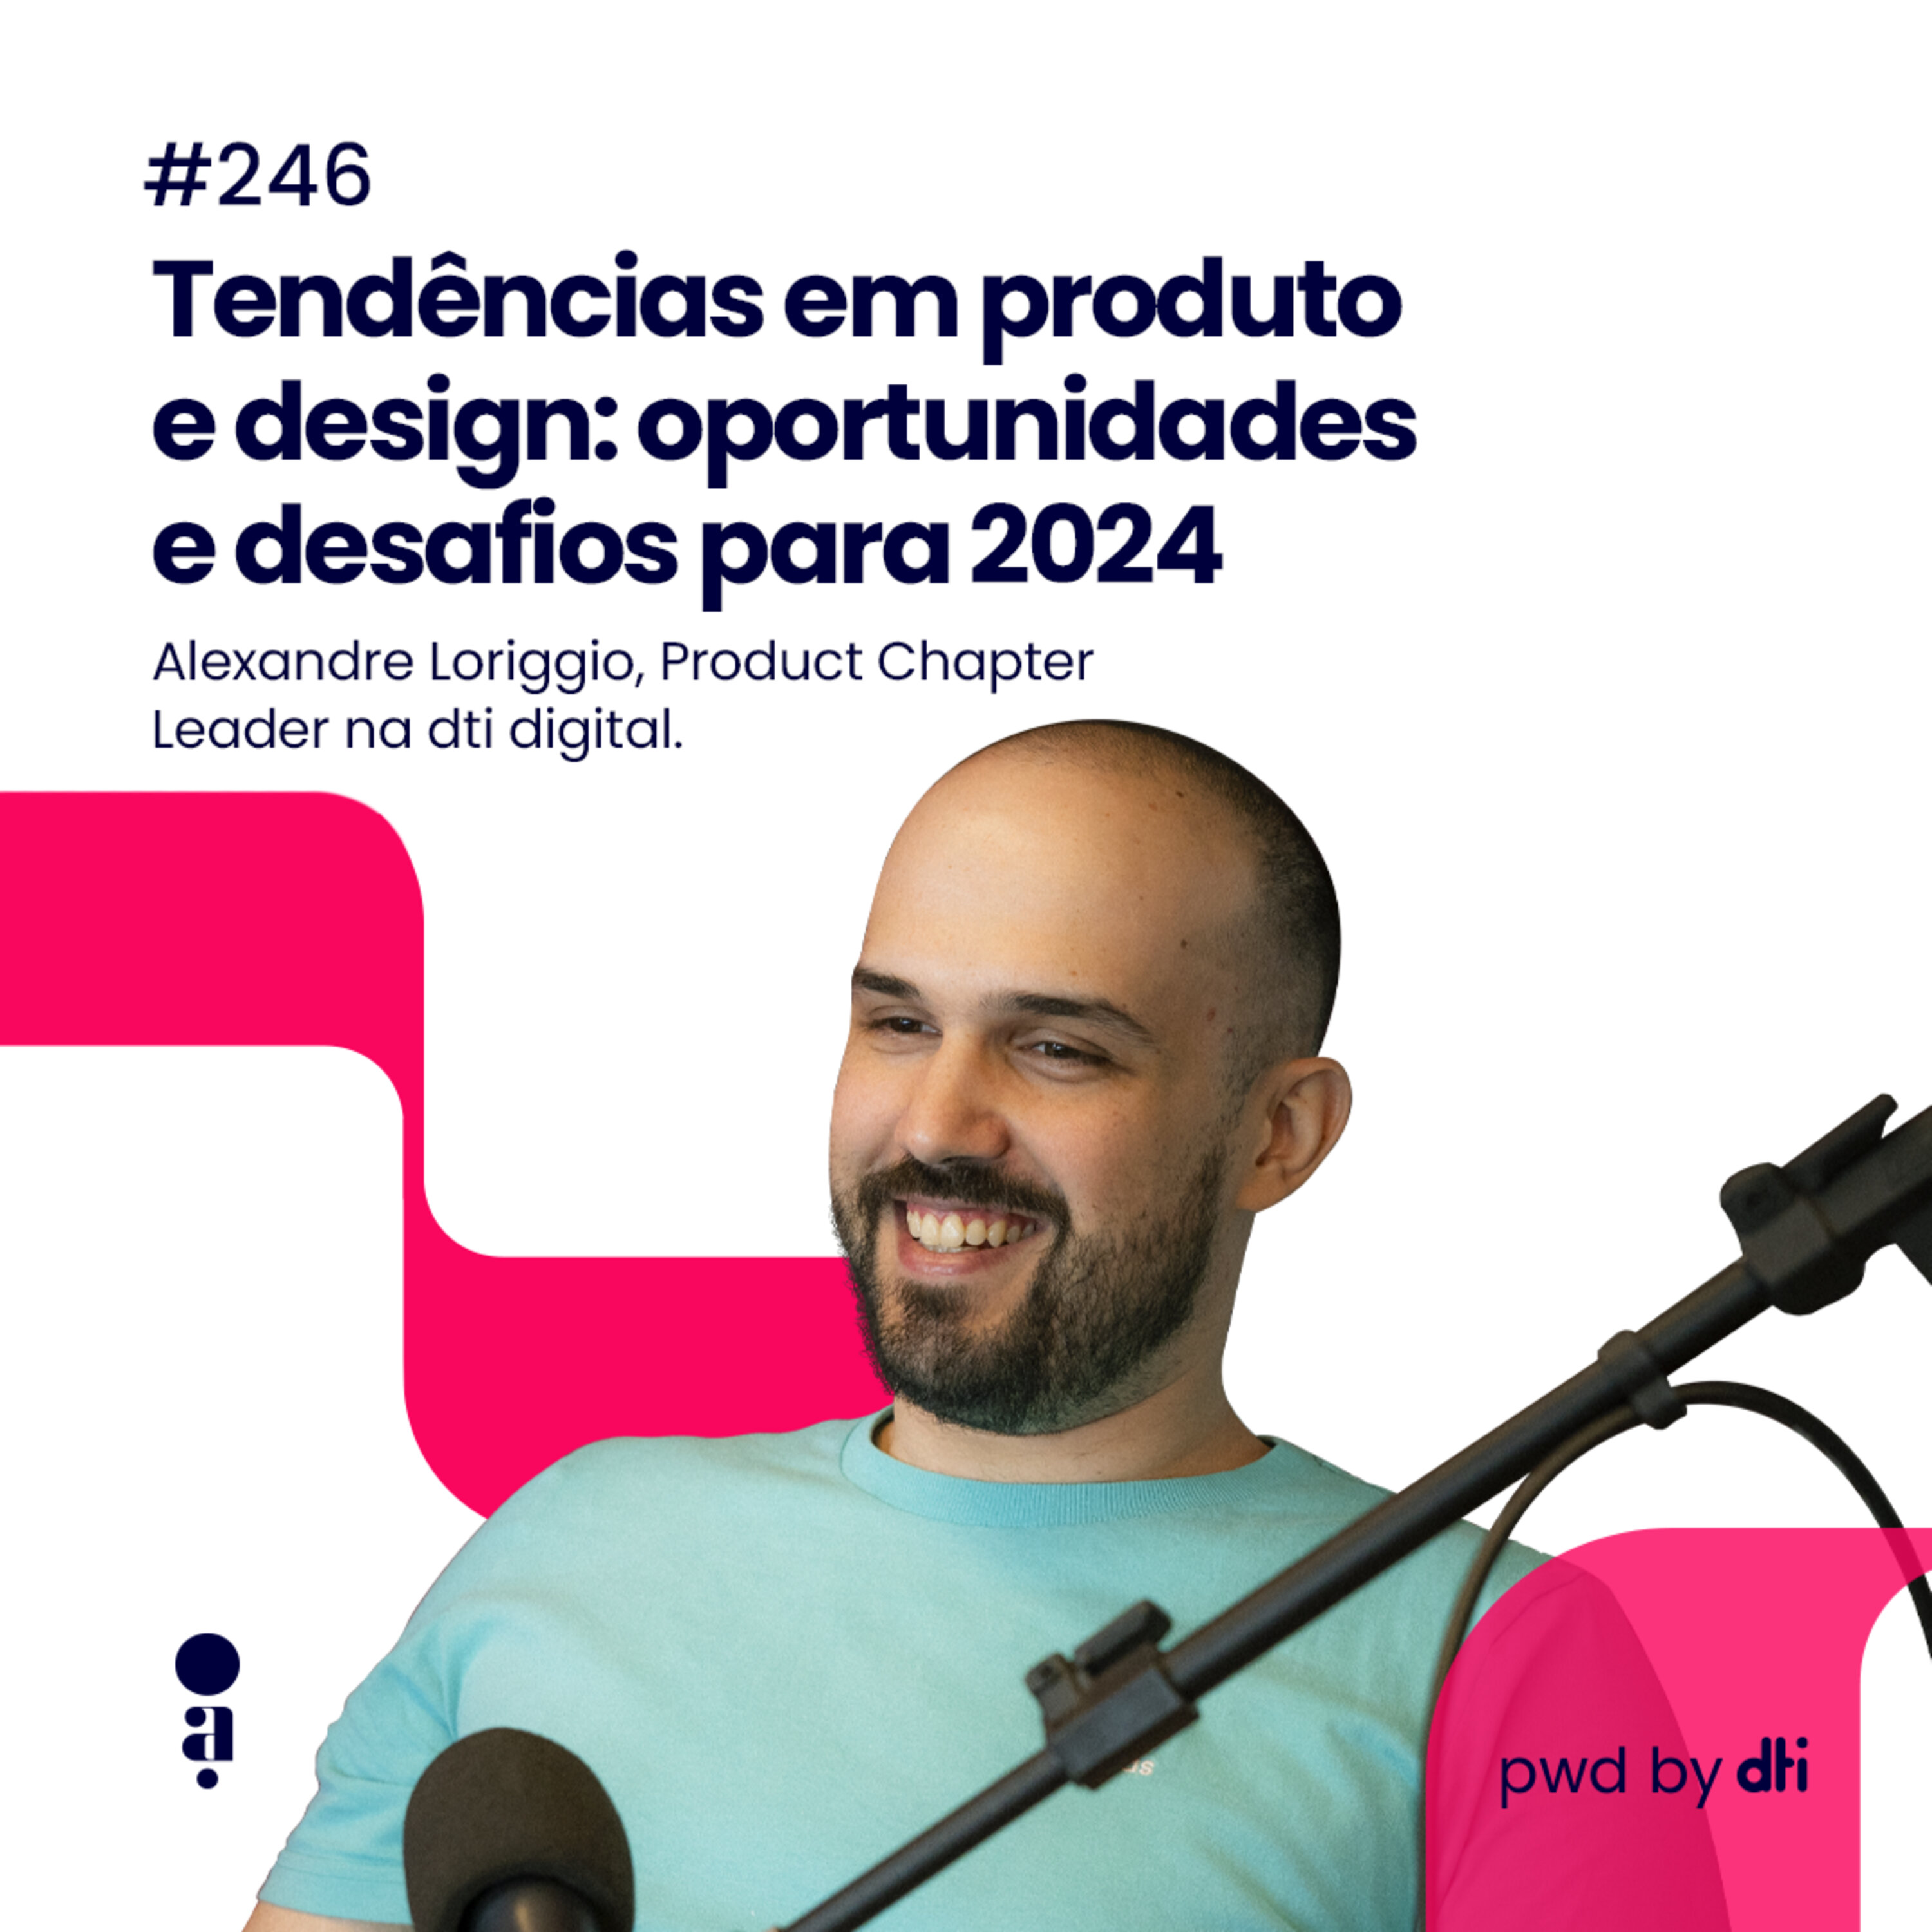 #246 - Tendências em produto e design: oportunidades e desafios para 2024